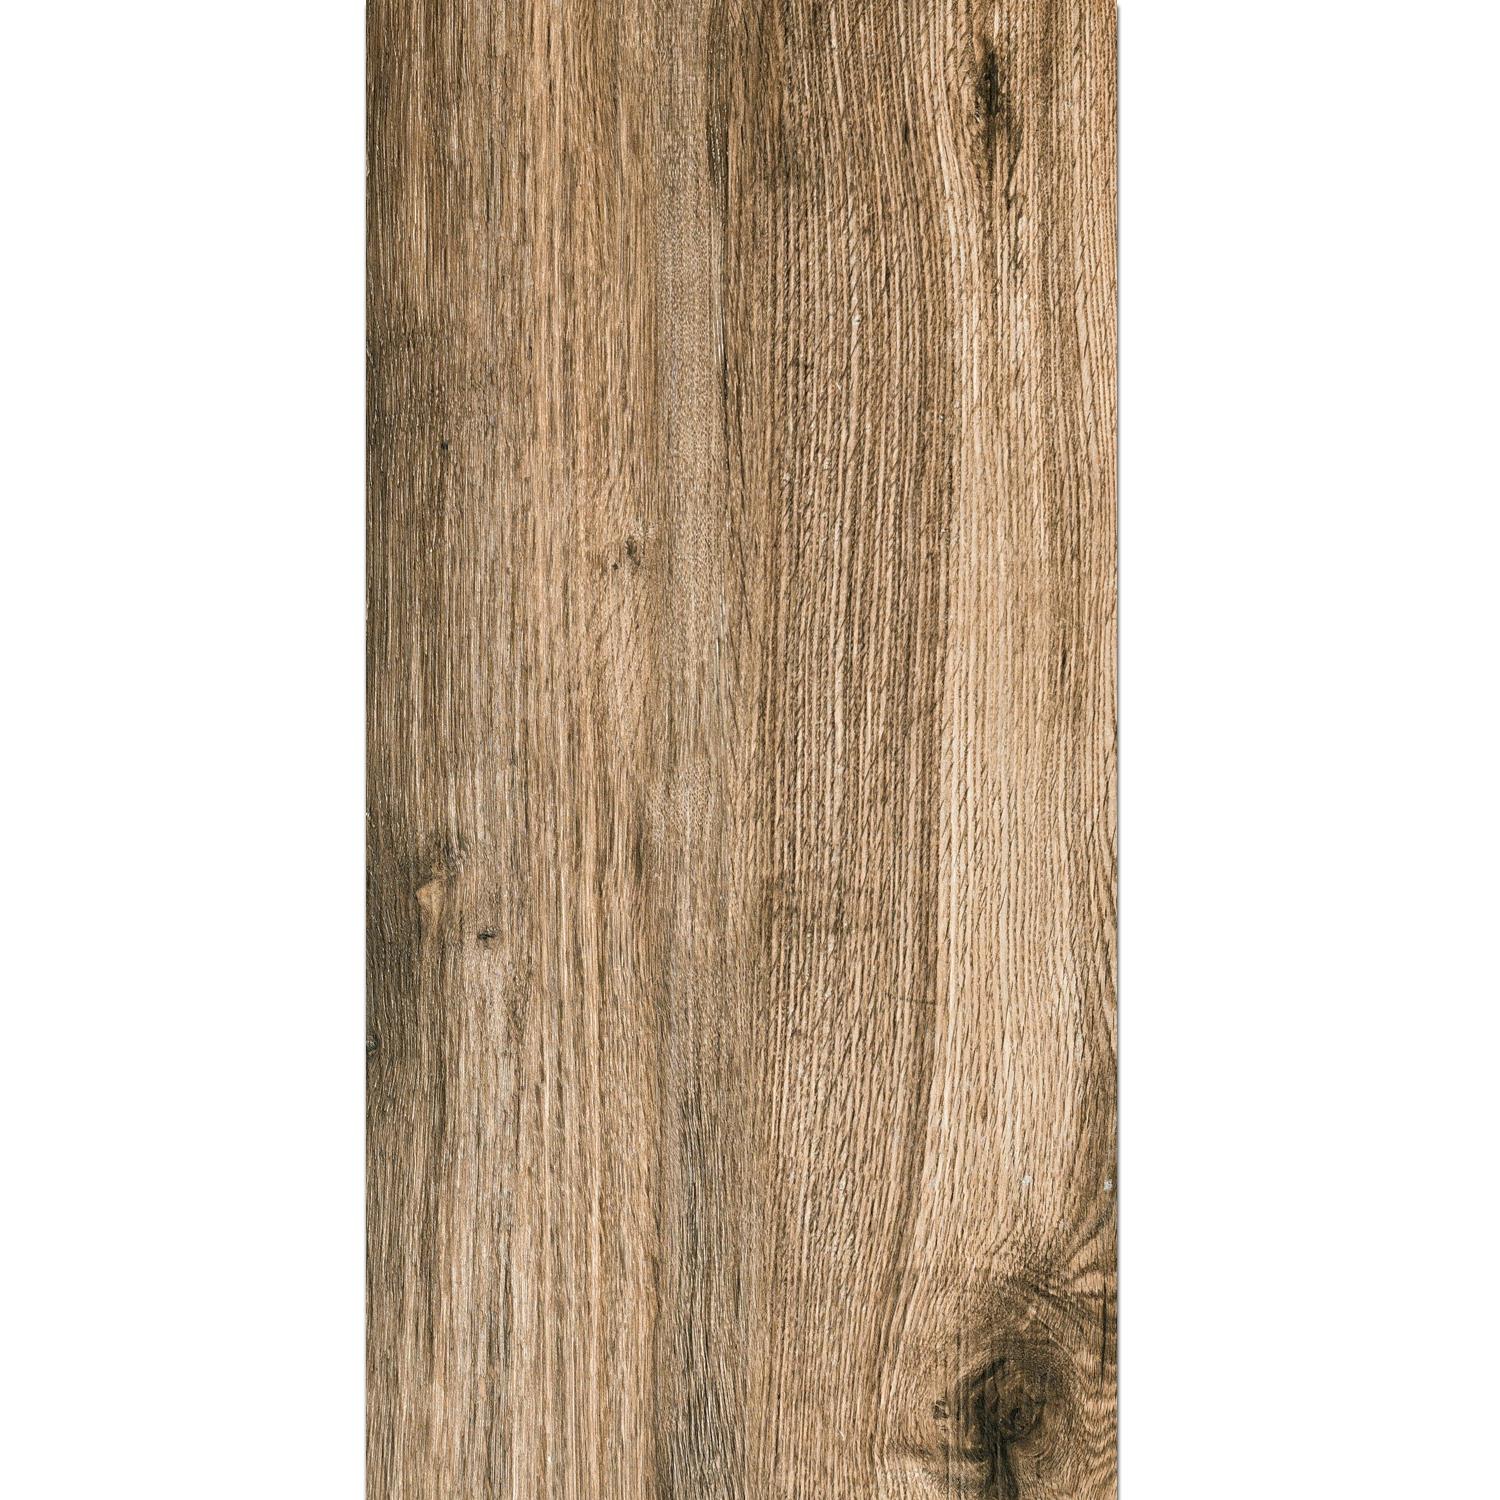 Terrastegels Starwood Houtlook Oak 45x90cm